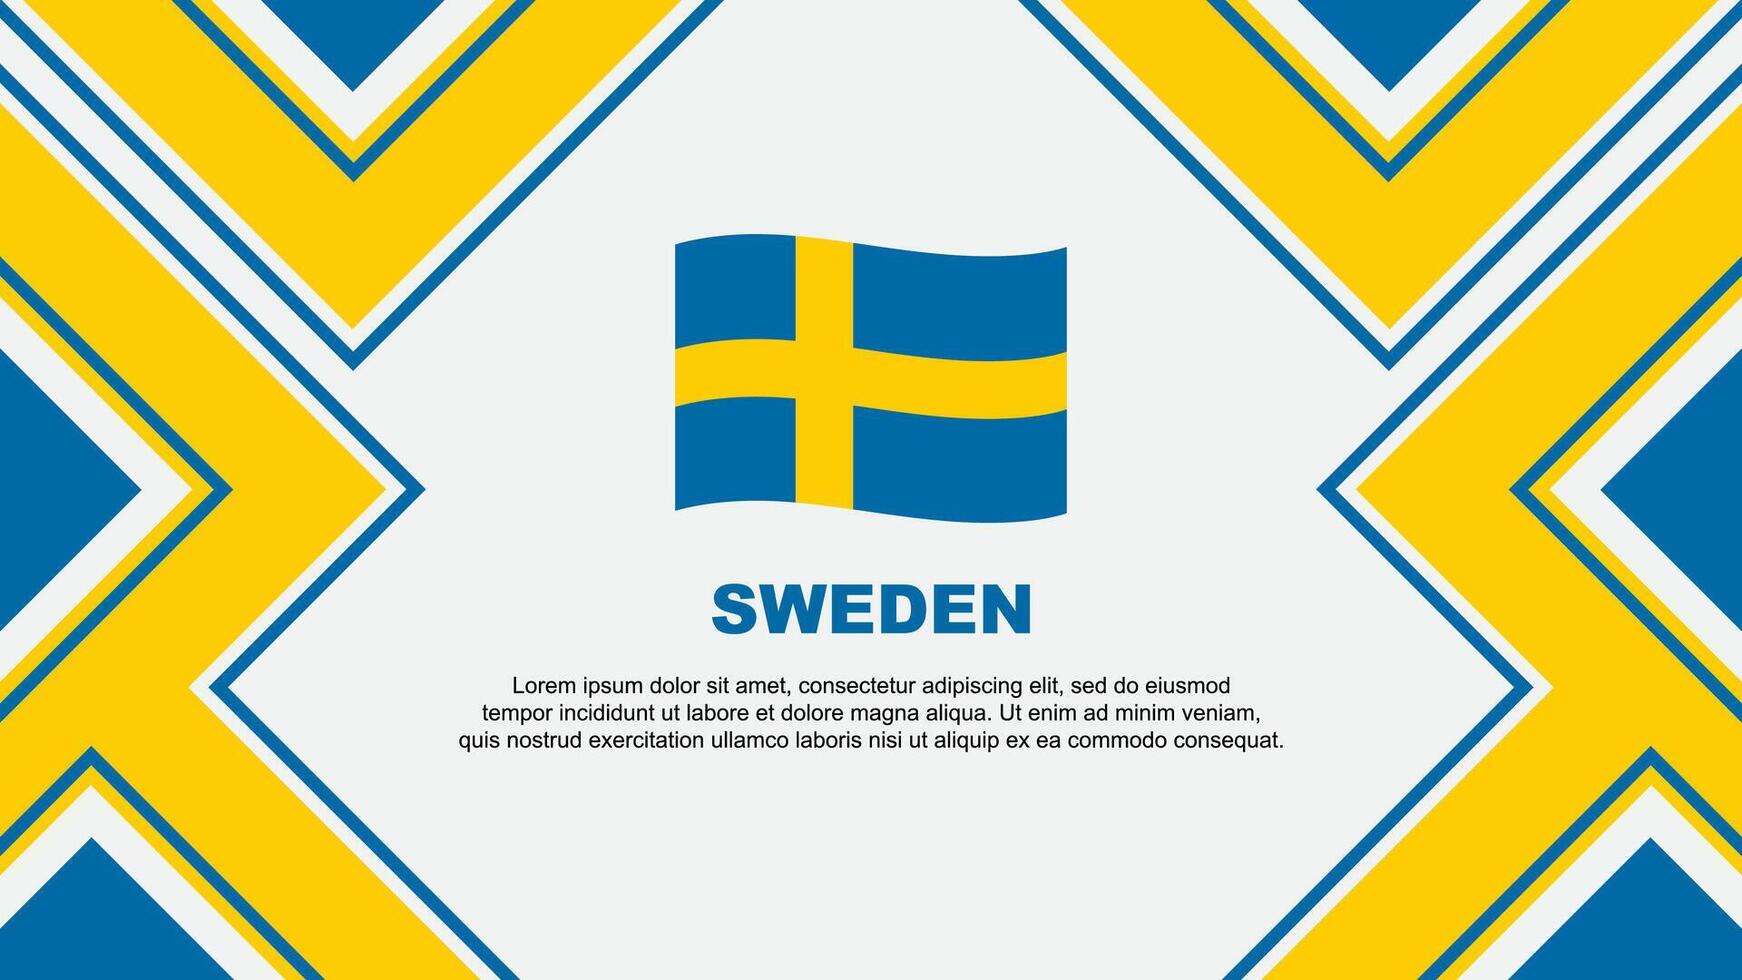 Sweden Flag Abstract Background Design Template. Sweden Independence Day Banner Wallpaper Vector Illustration. Sweden Vector